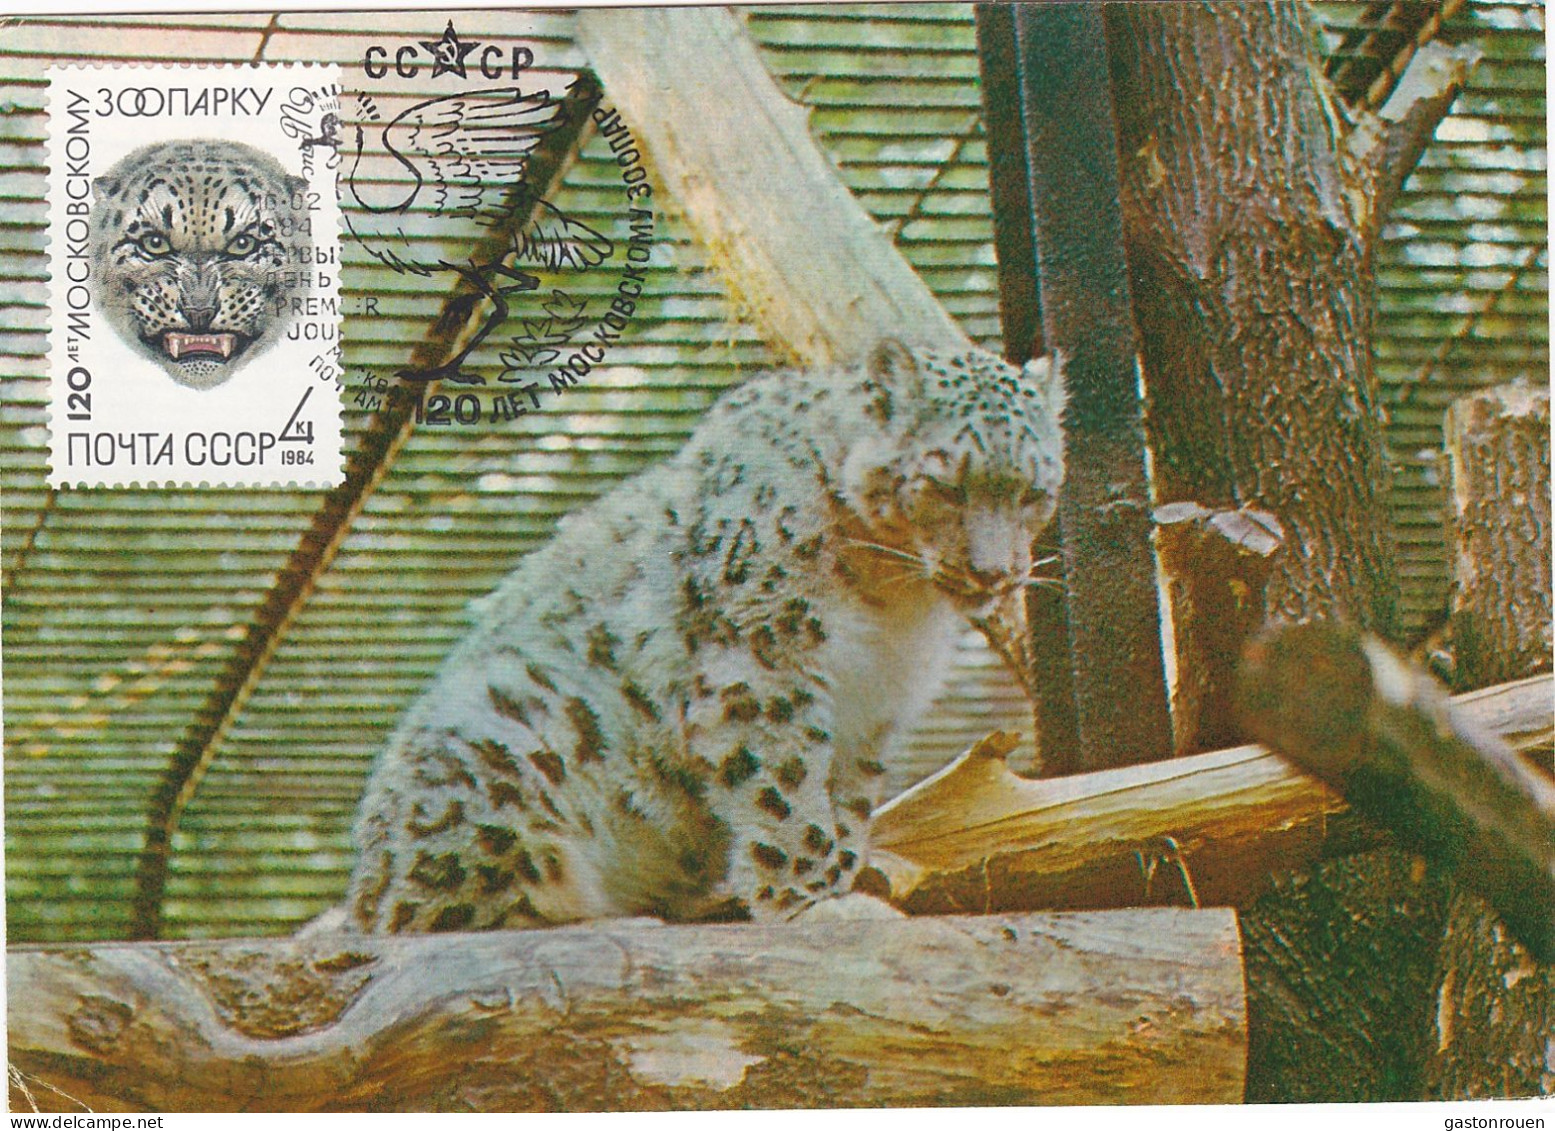 Carte Maximum URSS Russie Russia Félin Feline Léopard Des Neiges Snow Leopard 5077 - Cartes Maximum